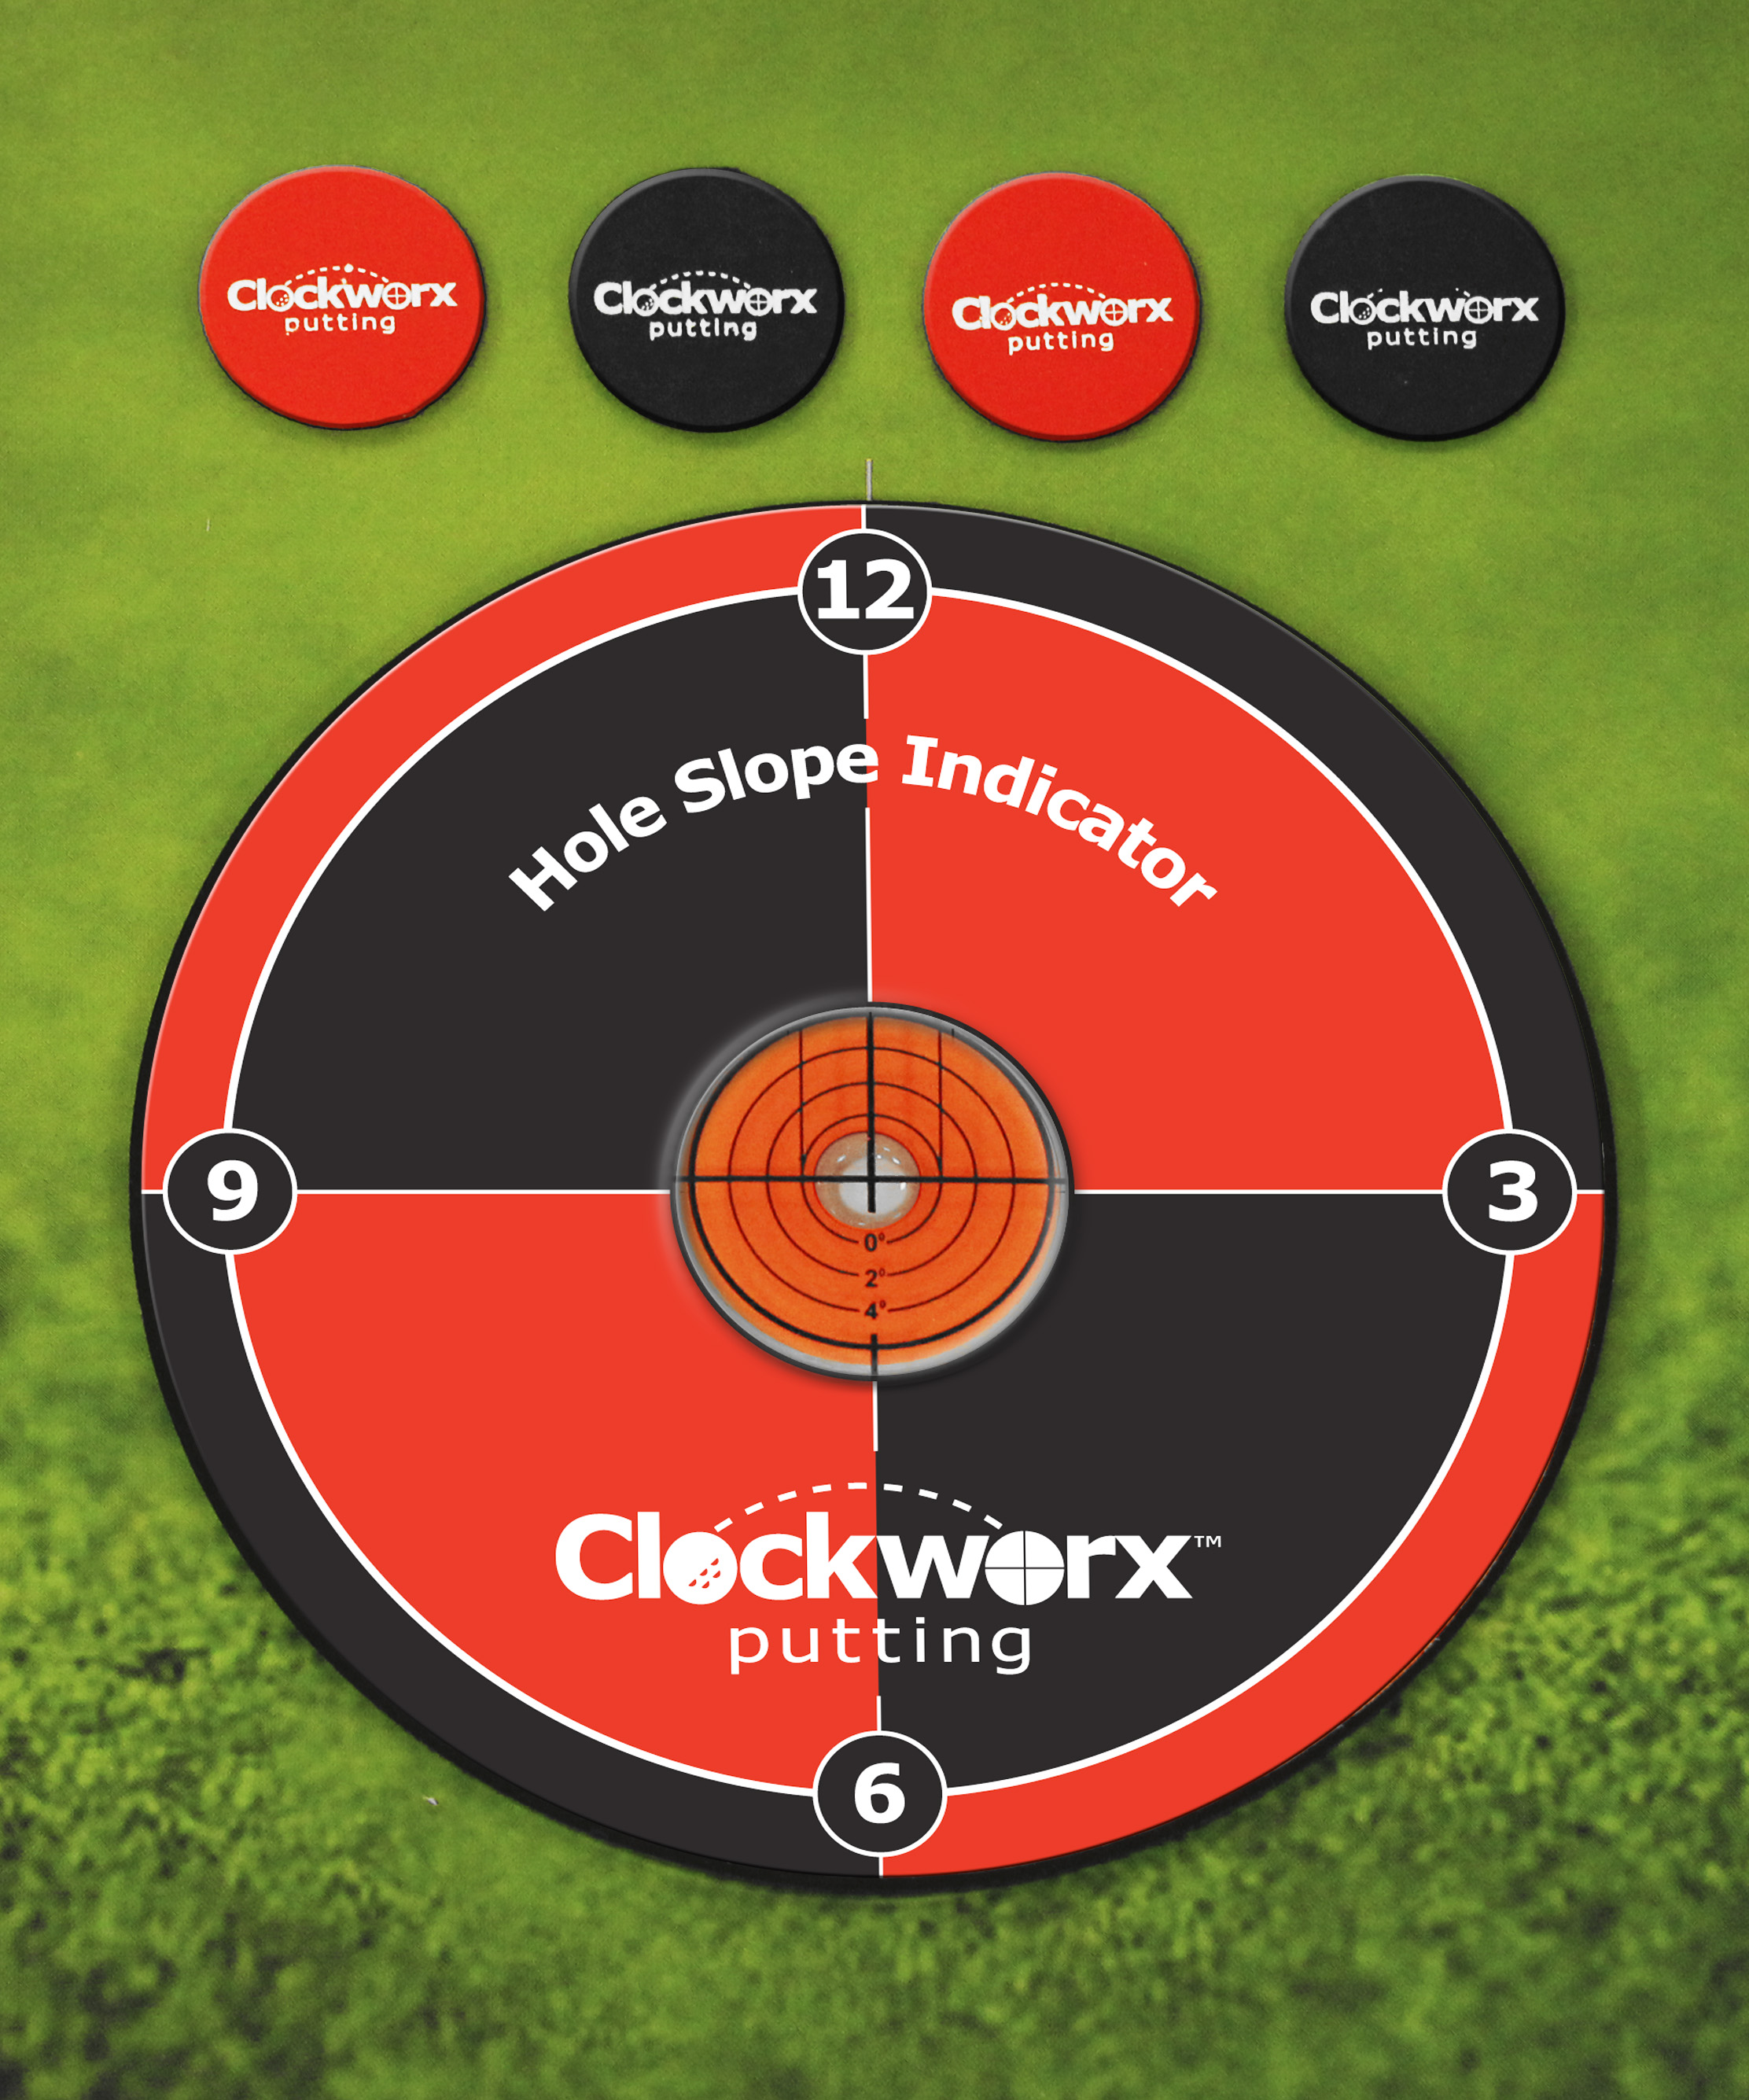 Clockworx01